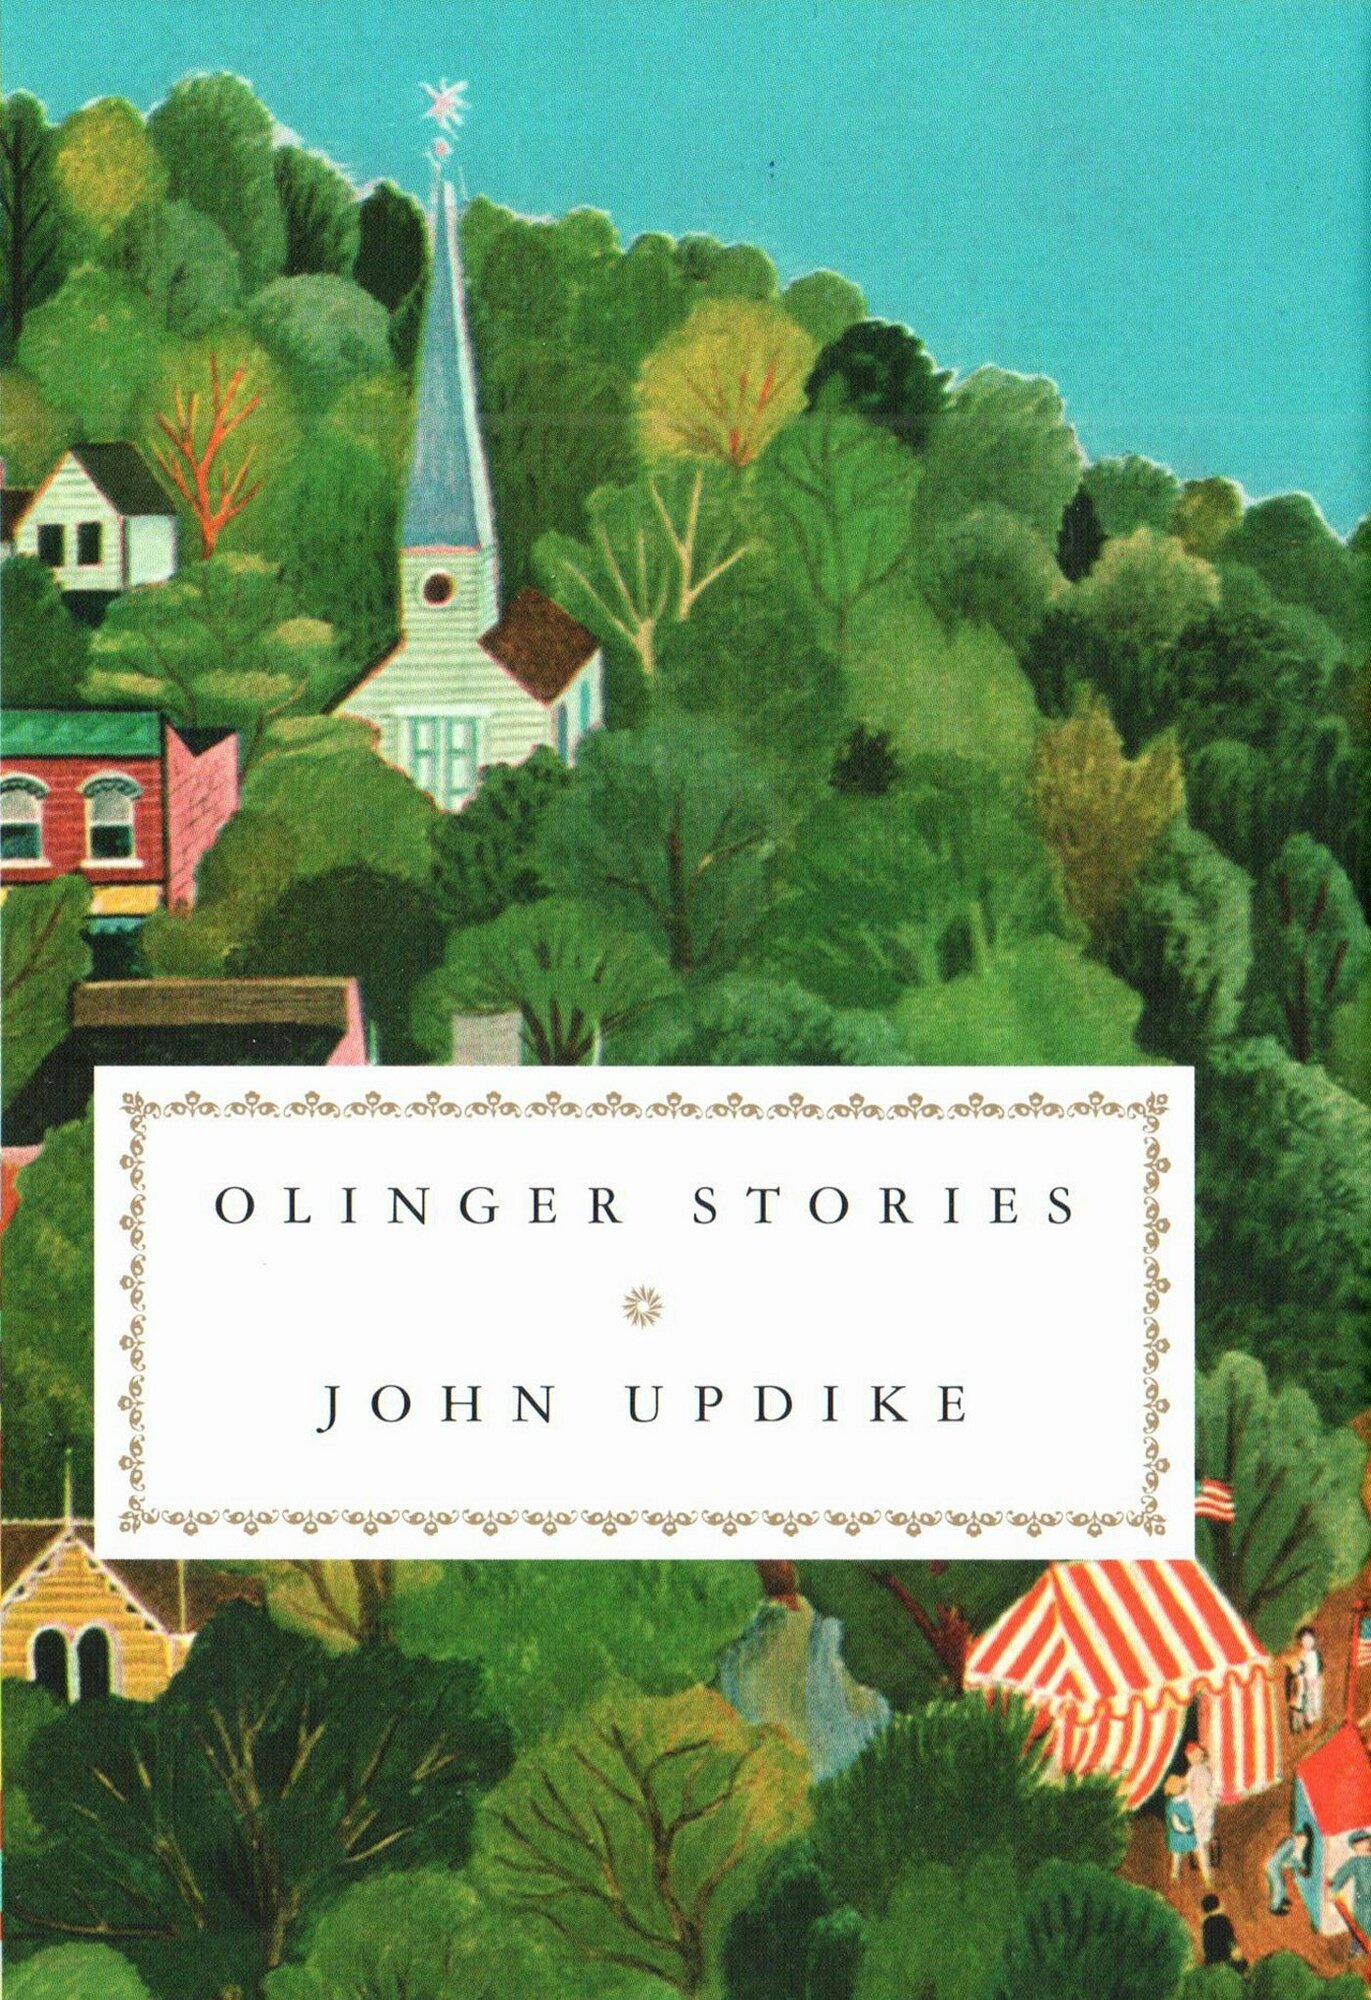 Olinger Stories (Апдайк Джон) - фото №1